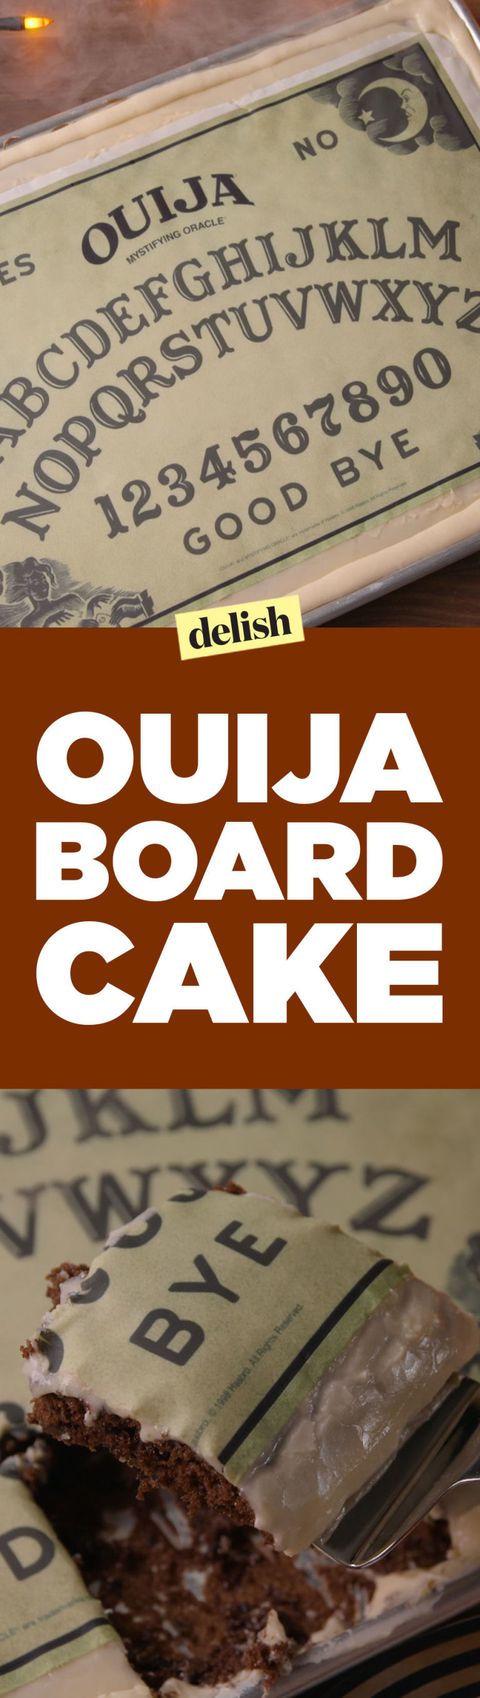 Ouiji Board Cake Pinterest